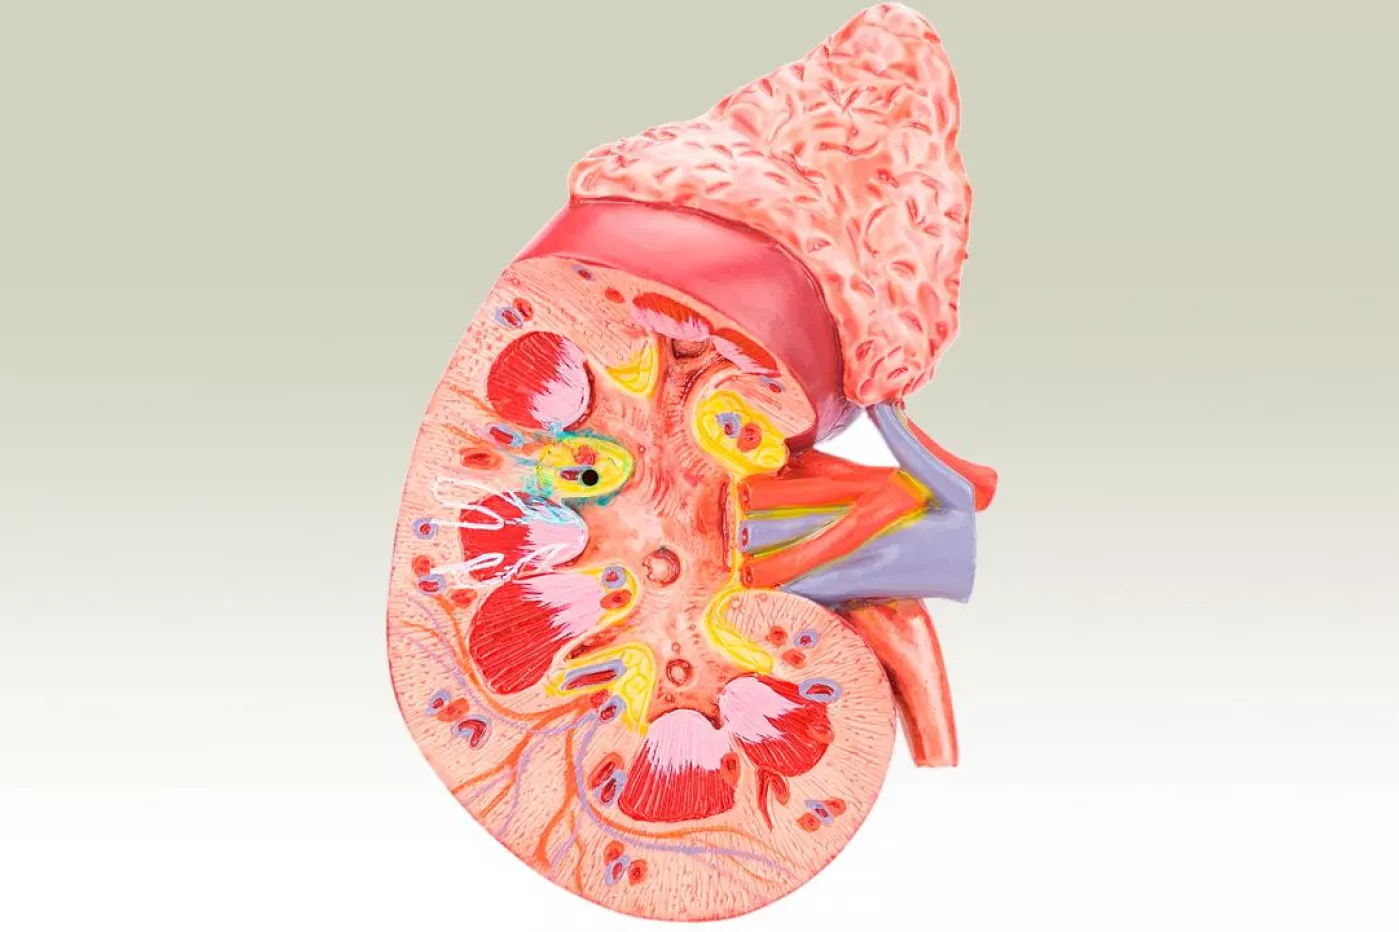 Anatomía del riñón. 